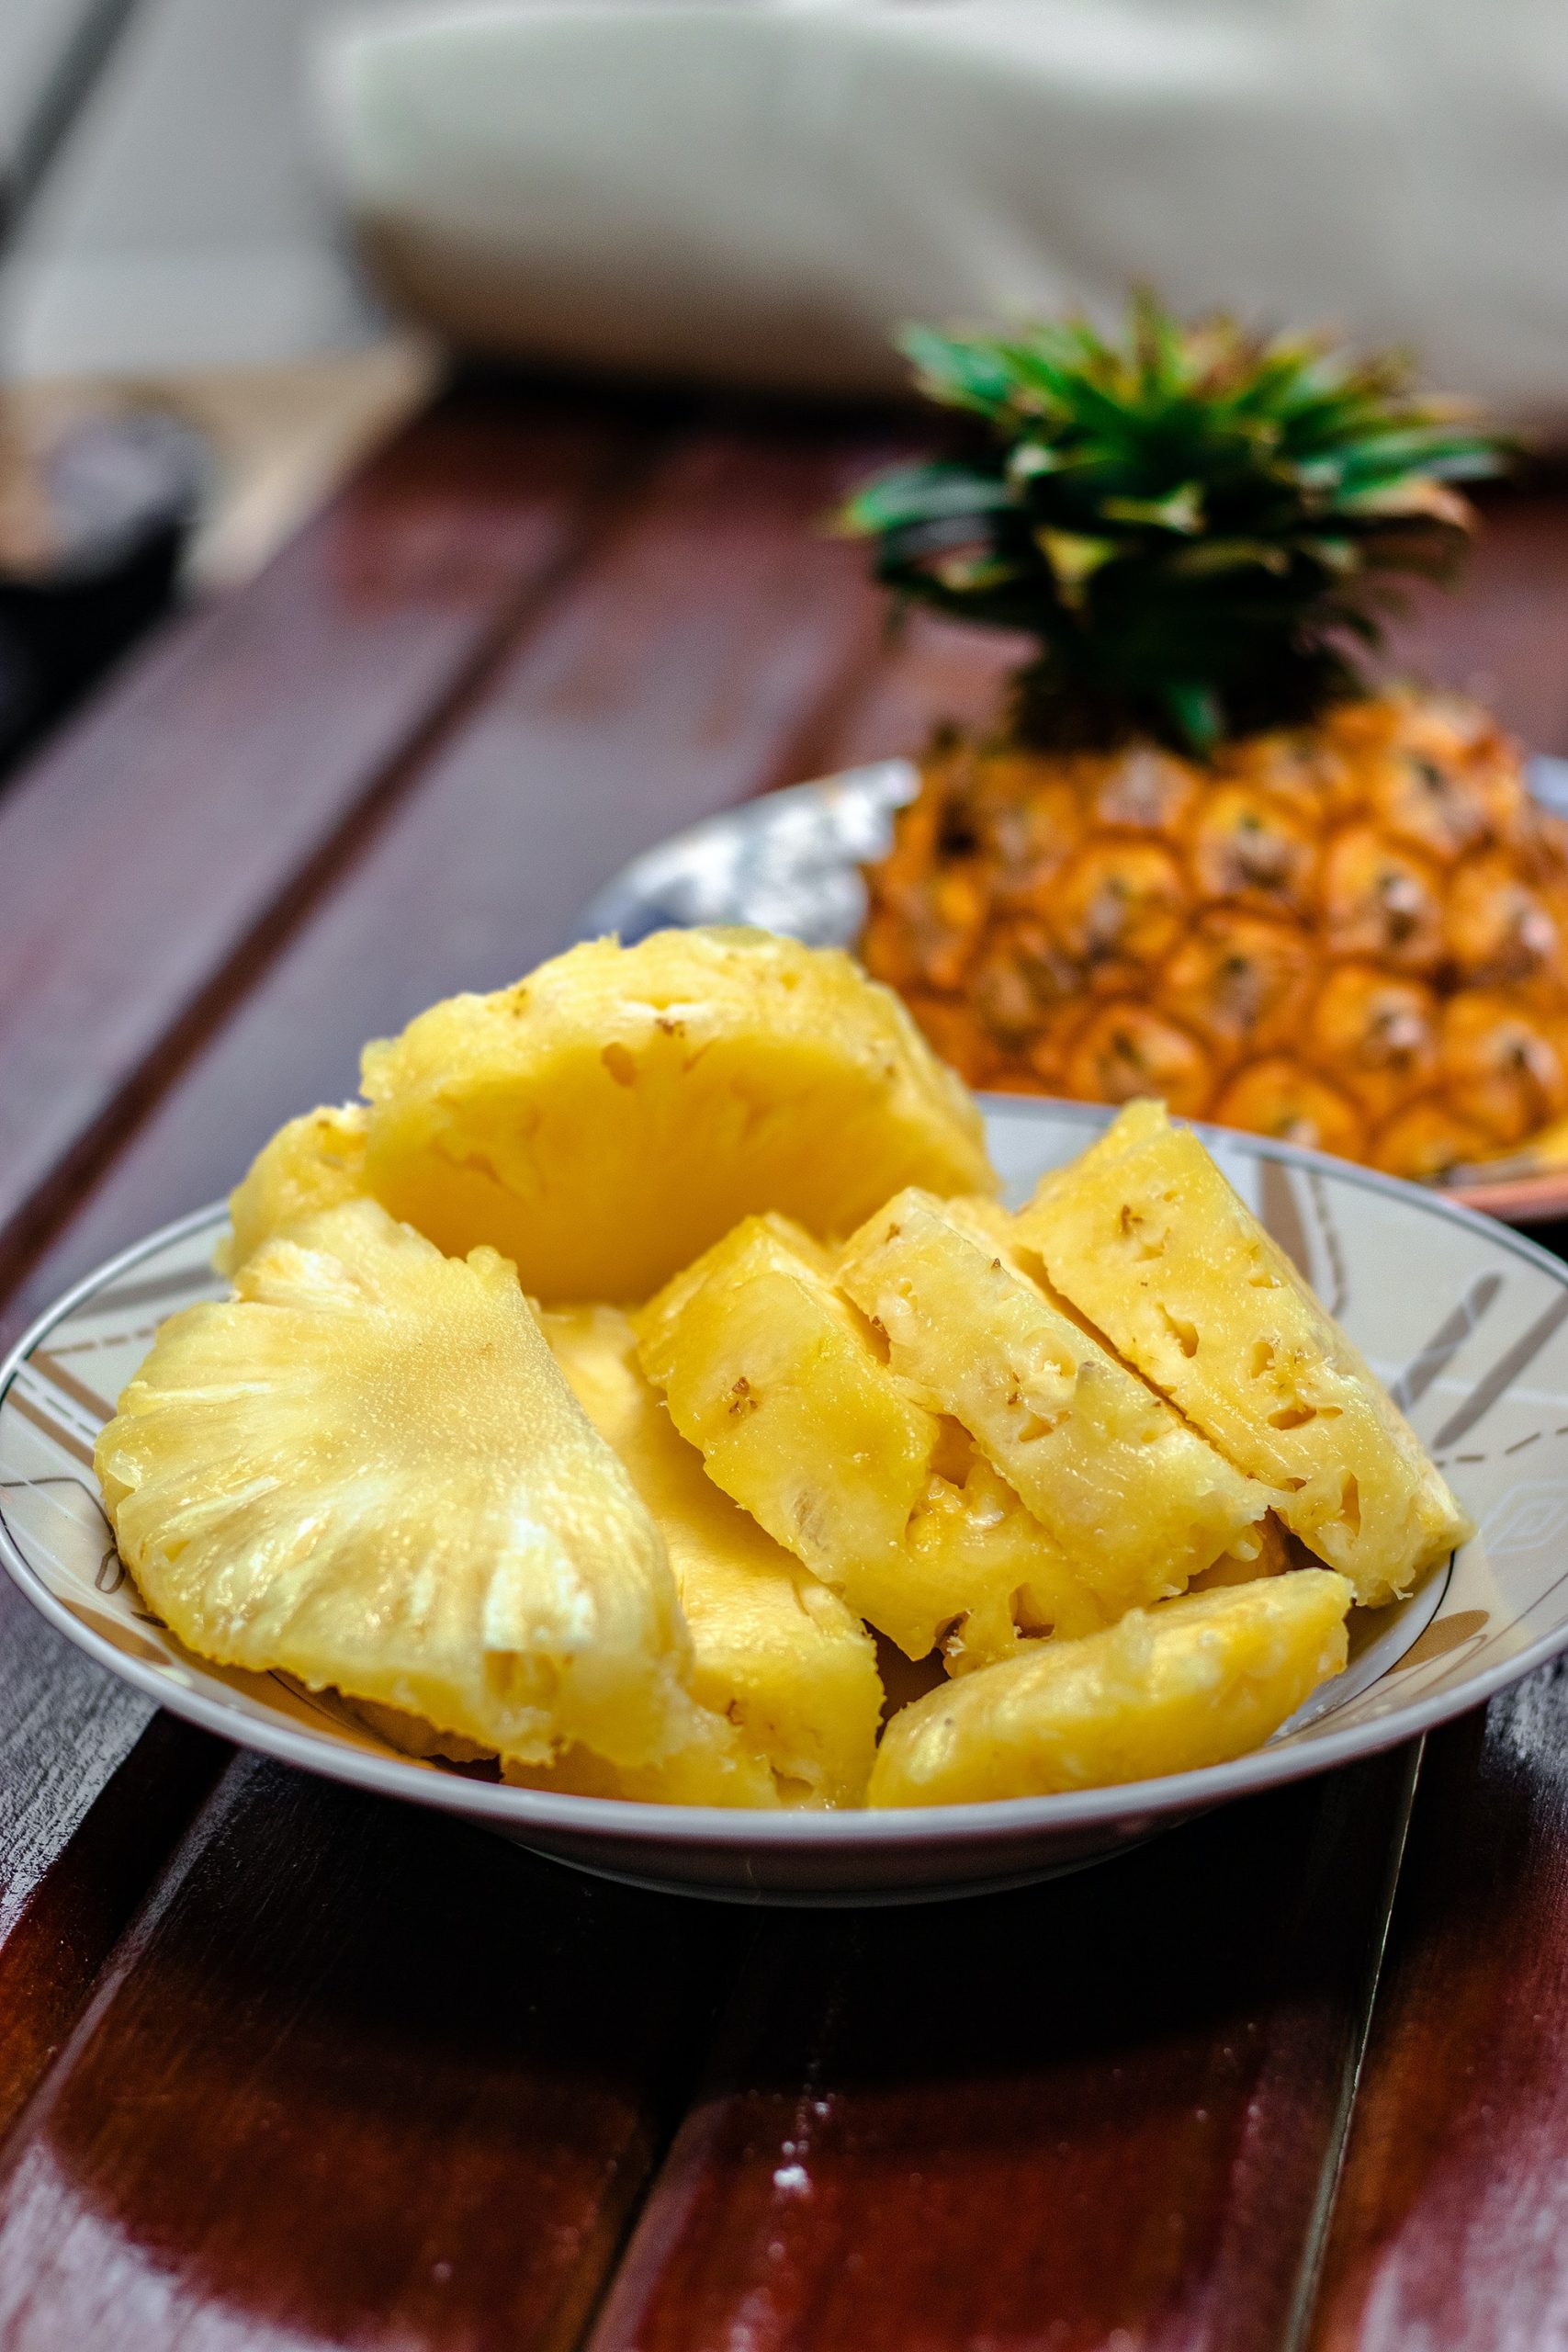 https://www.onehundreddollarsamonth.com/wp-content/uploads/2023/12/maui-gold-pineapple-scaled.jpg